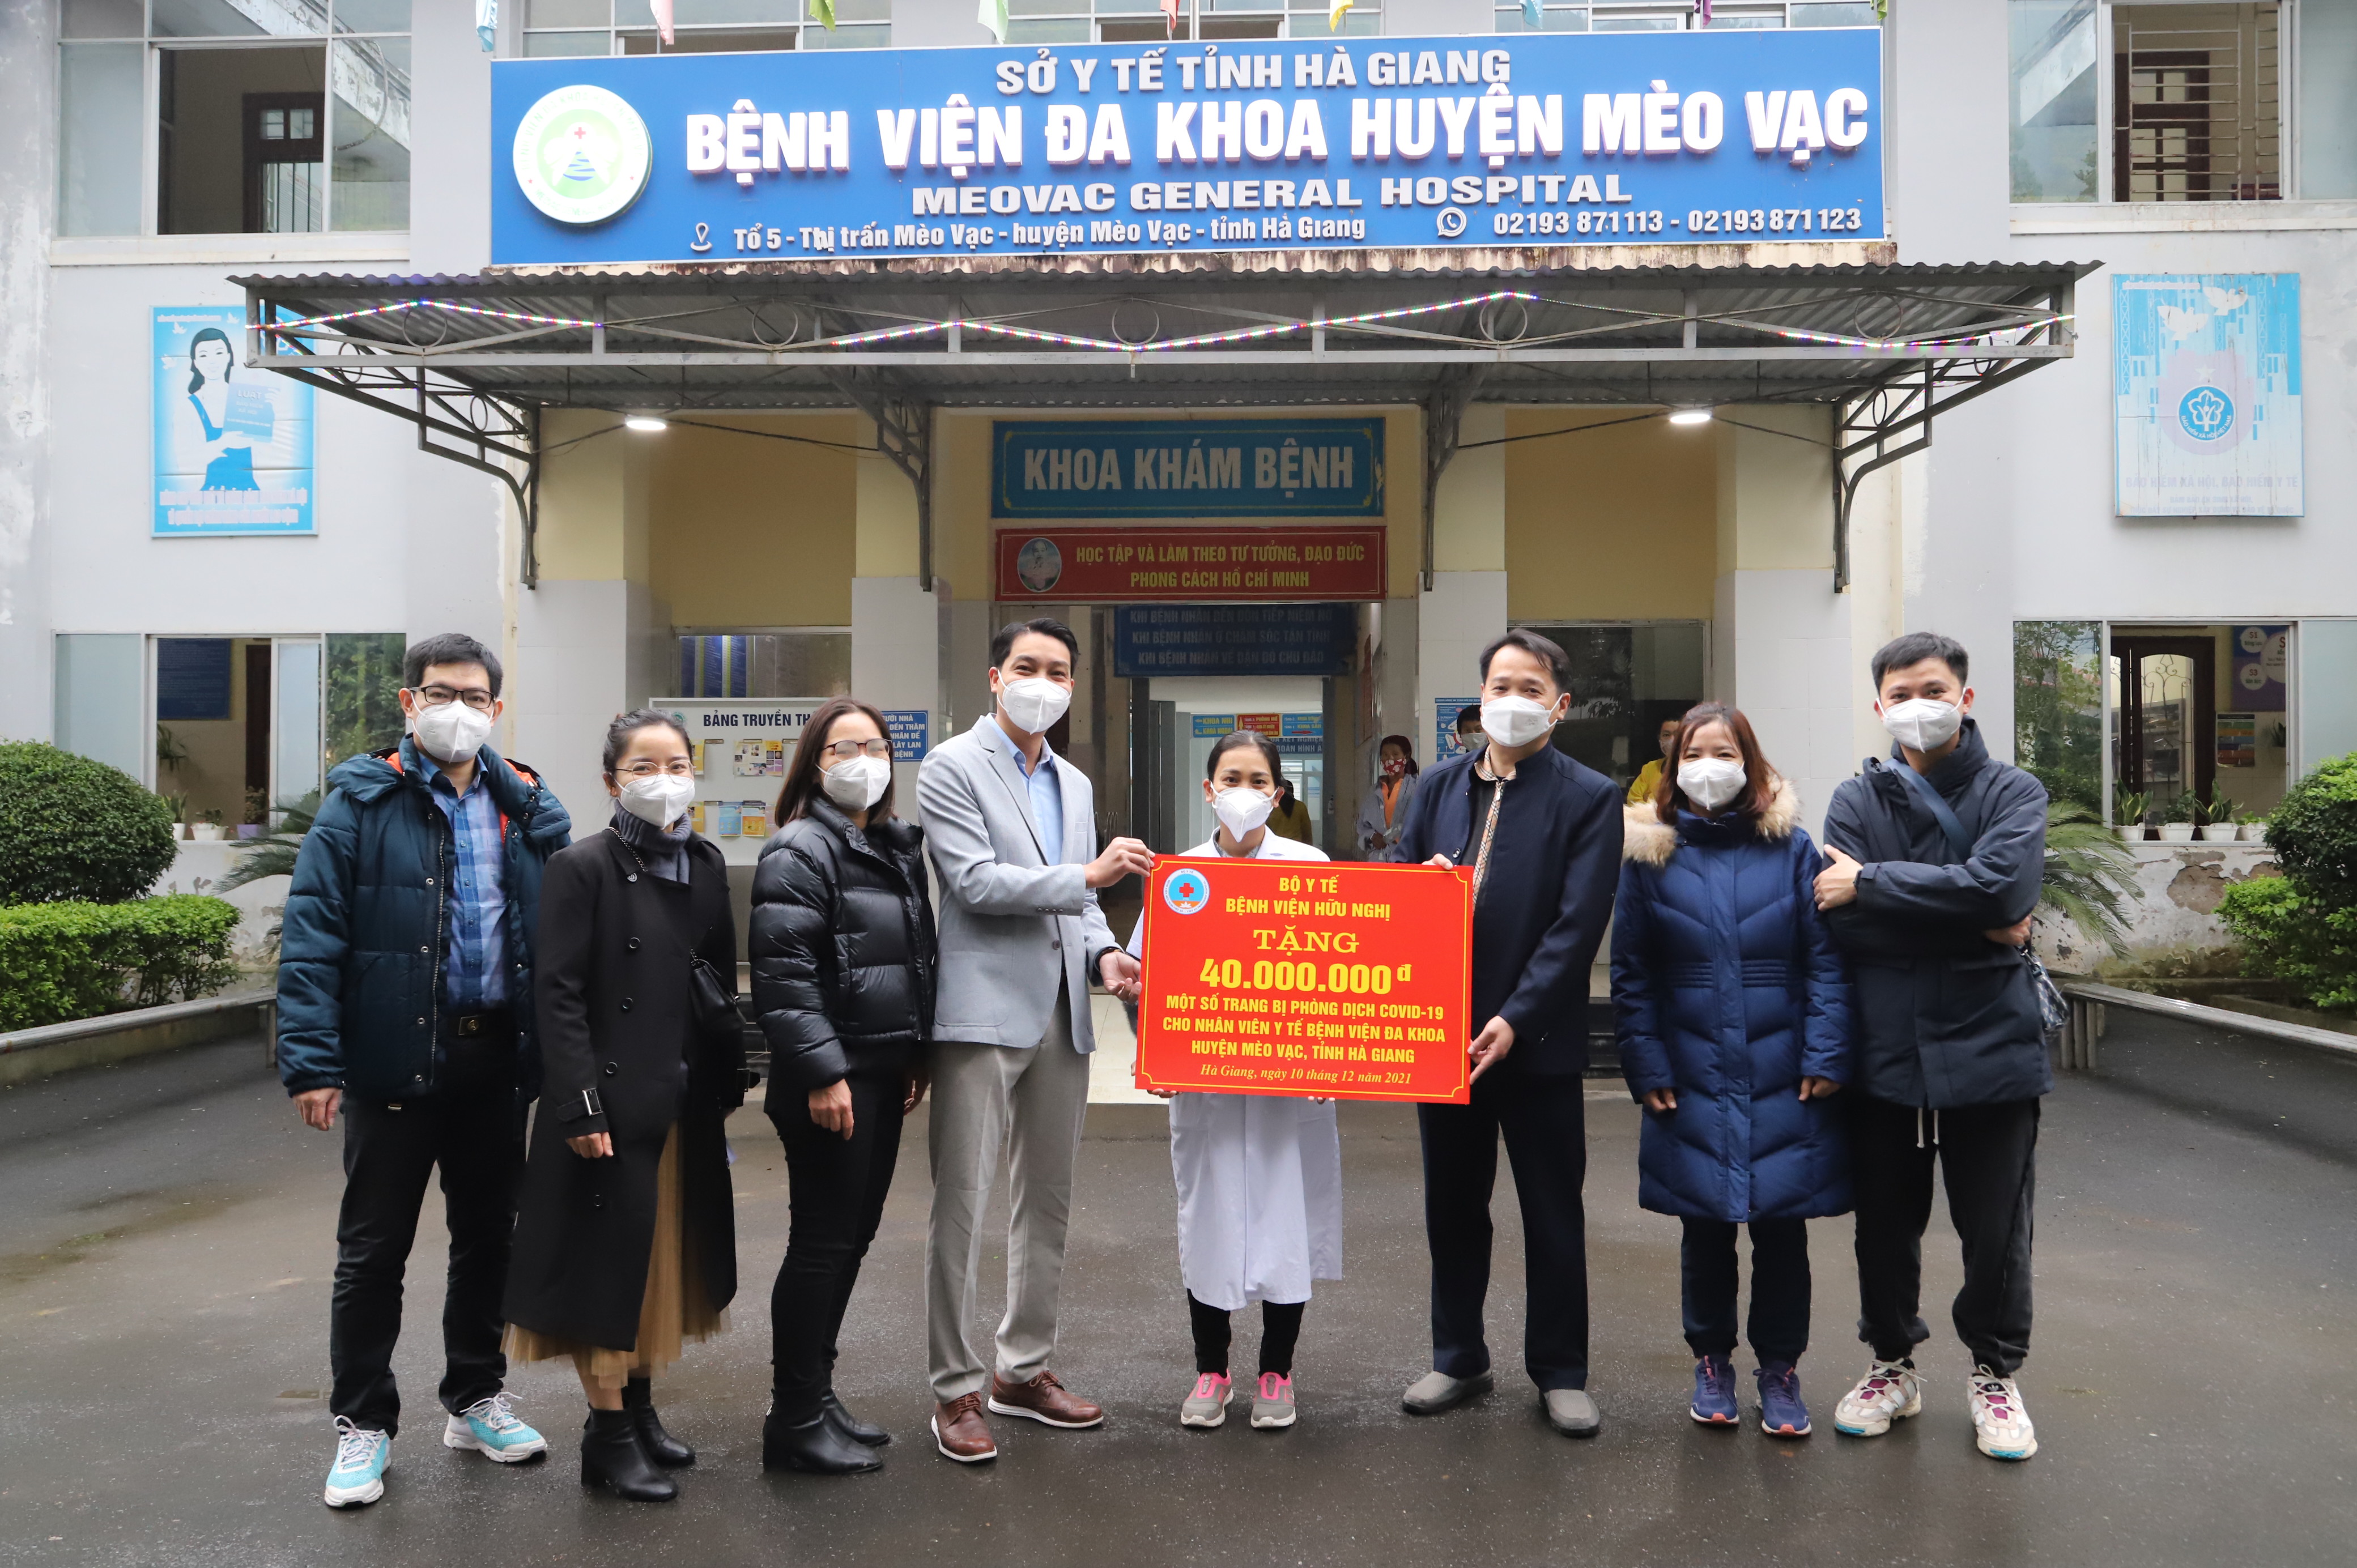 Bệnh viện Hữu nghị Việt – Xô trao tặng vật tư y tế phòng chống dịch cho BVĐK huyện Mèo Vạc